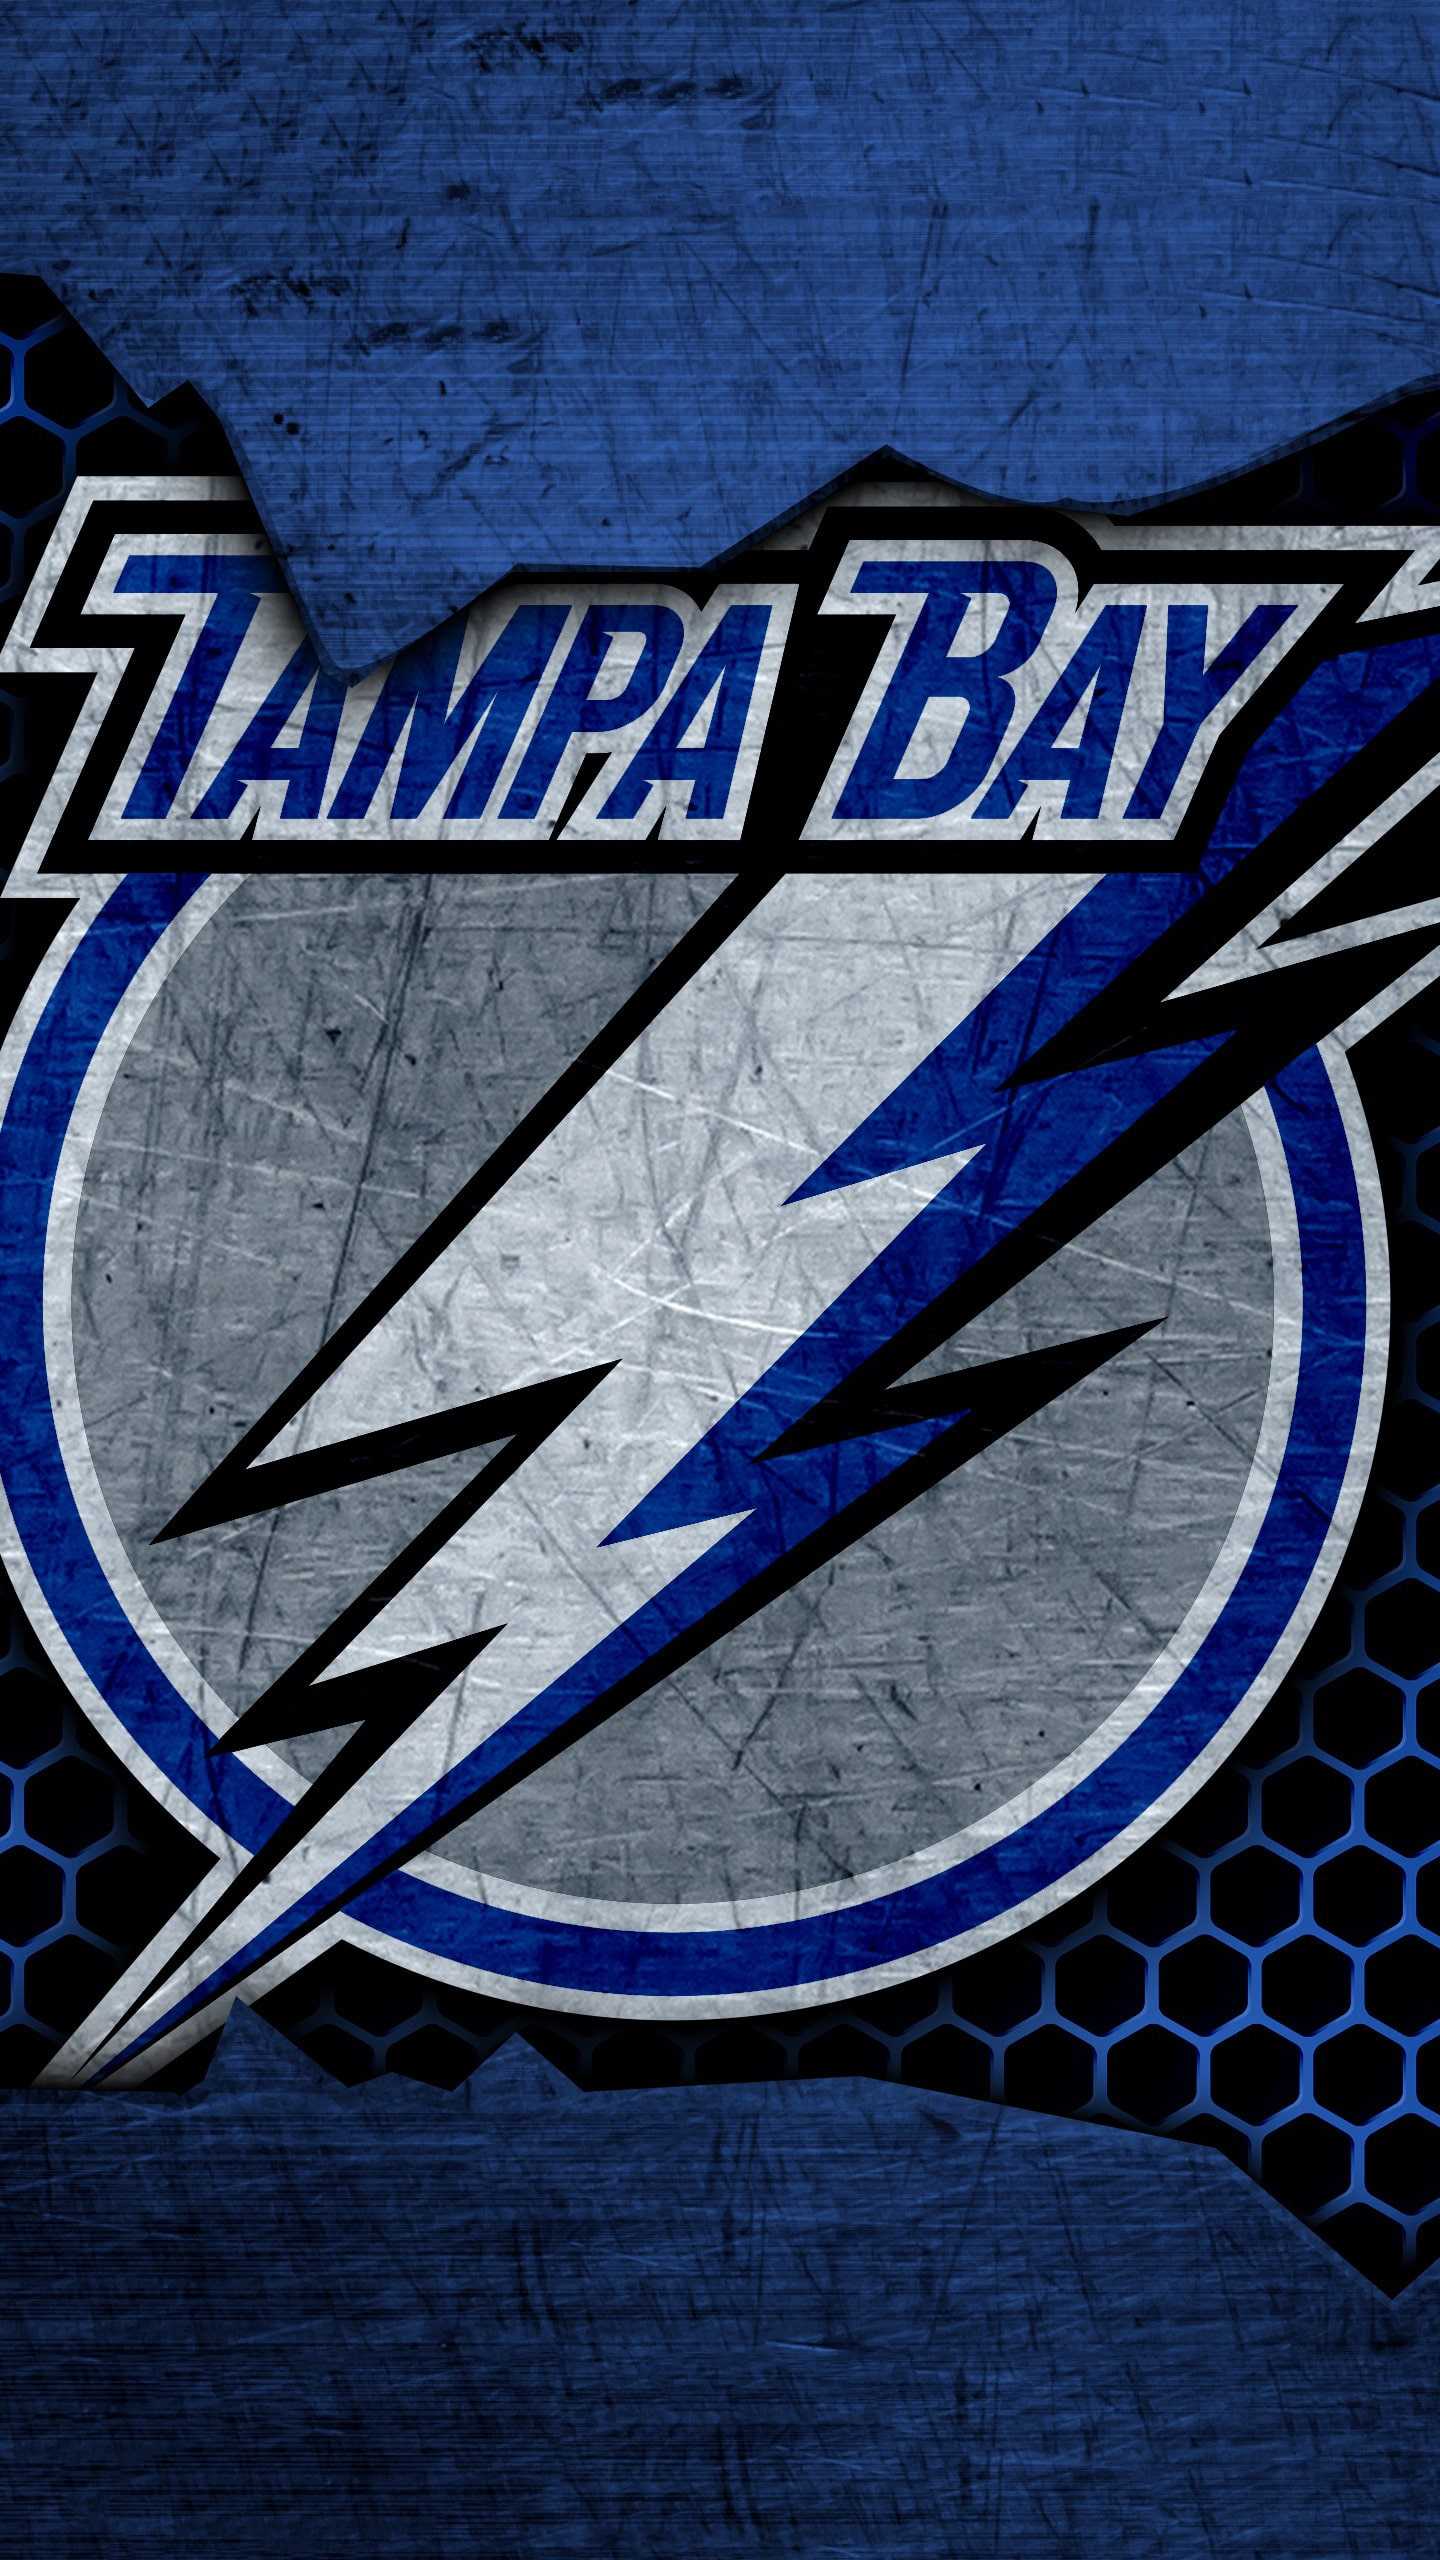 Tampa Bay Lightning Wallpapers 1